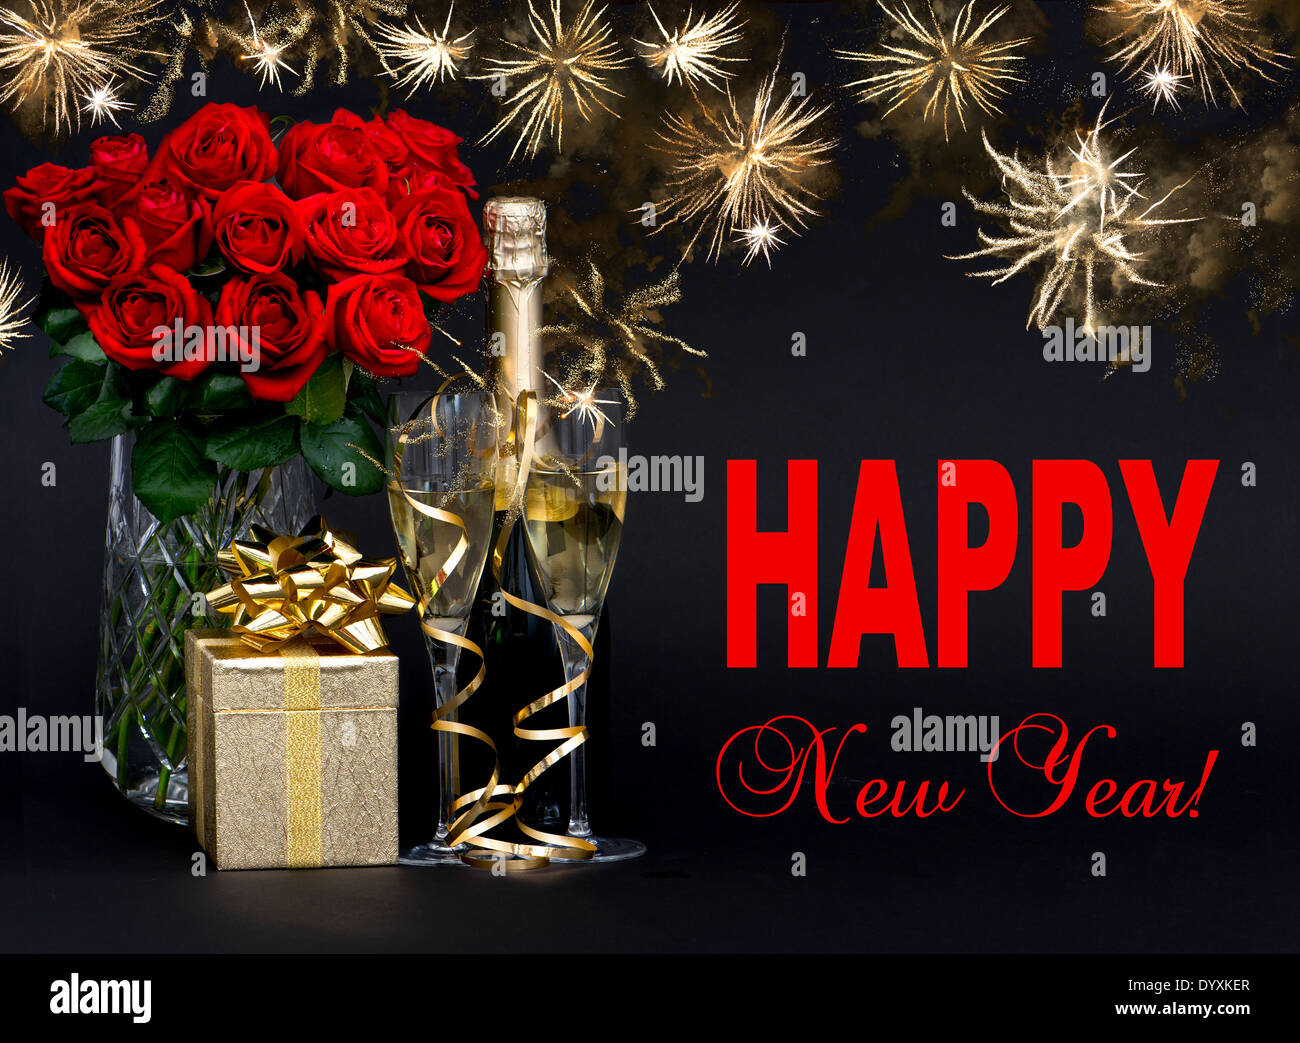 Frohes neues Jahr! Karte-Konzept. rote Rosen, Flasche Champagner, goldenen Geschenk mit wunderschönen goldenen Feuerwerk auf schwarzem Hintergrund Stockfoto